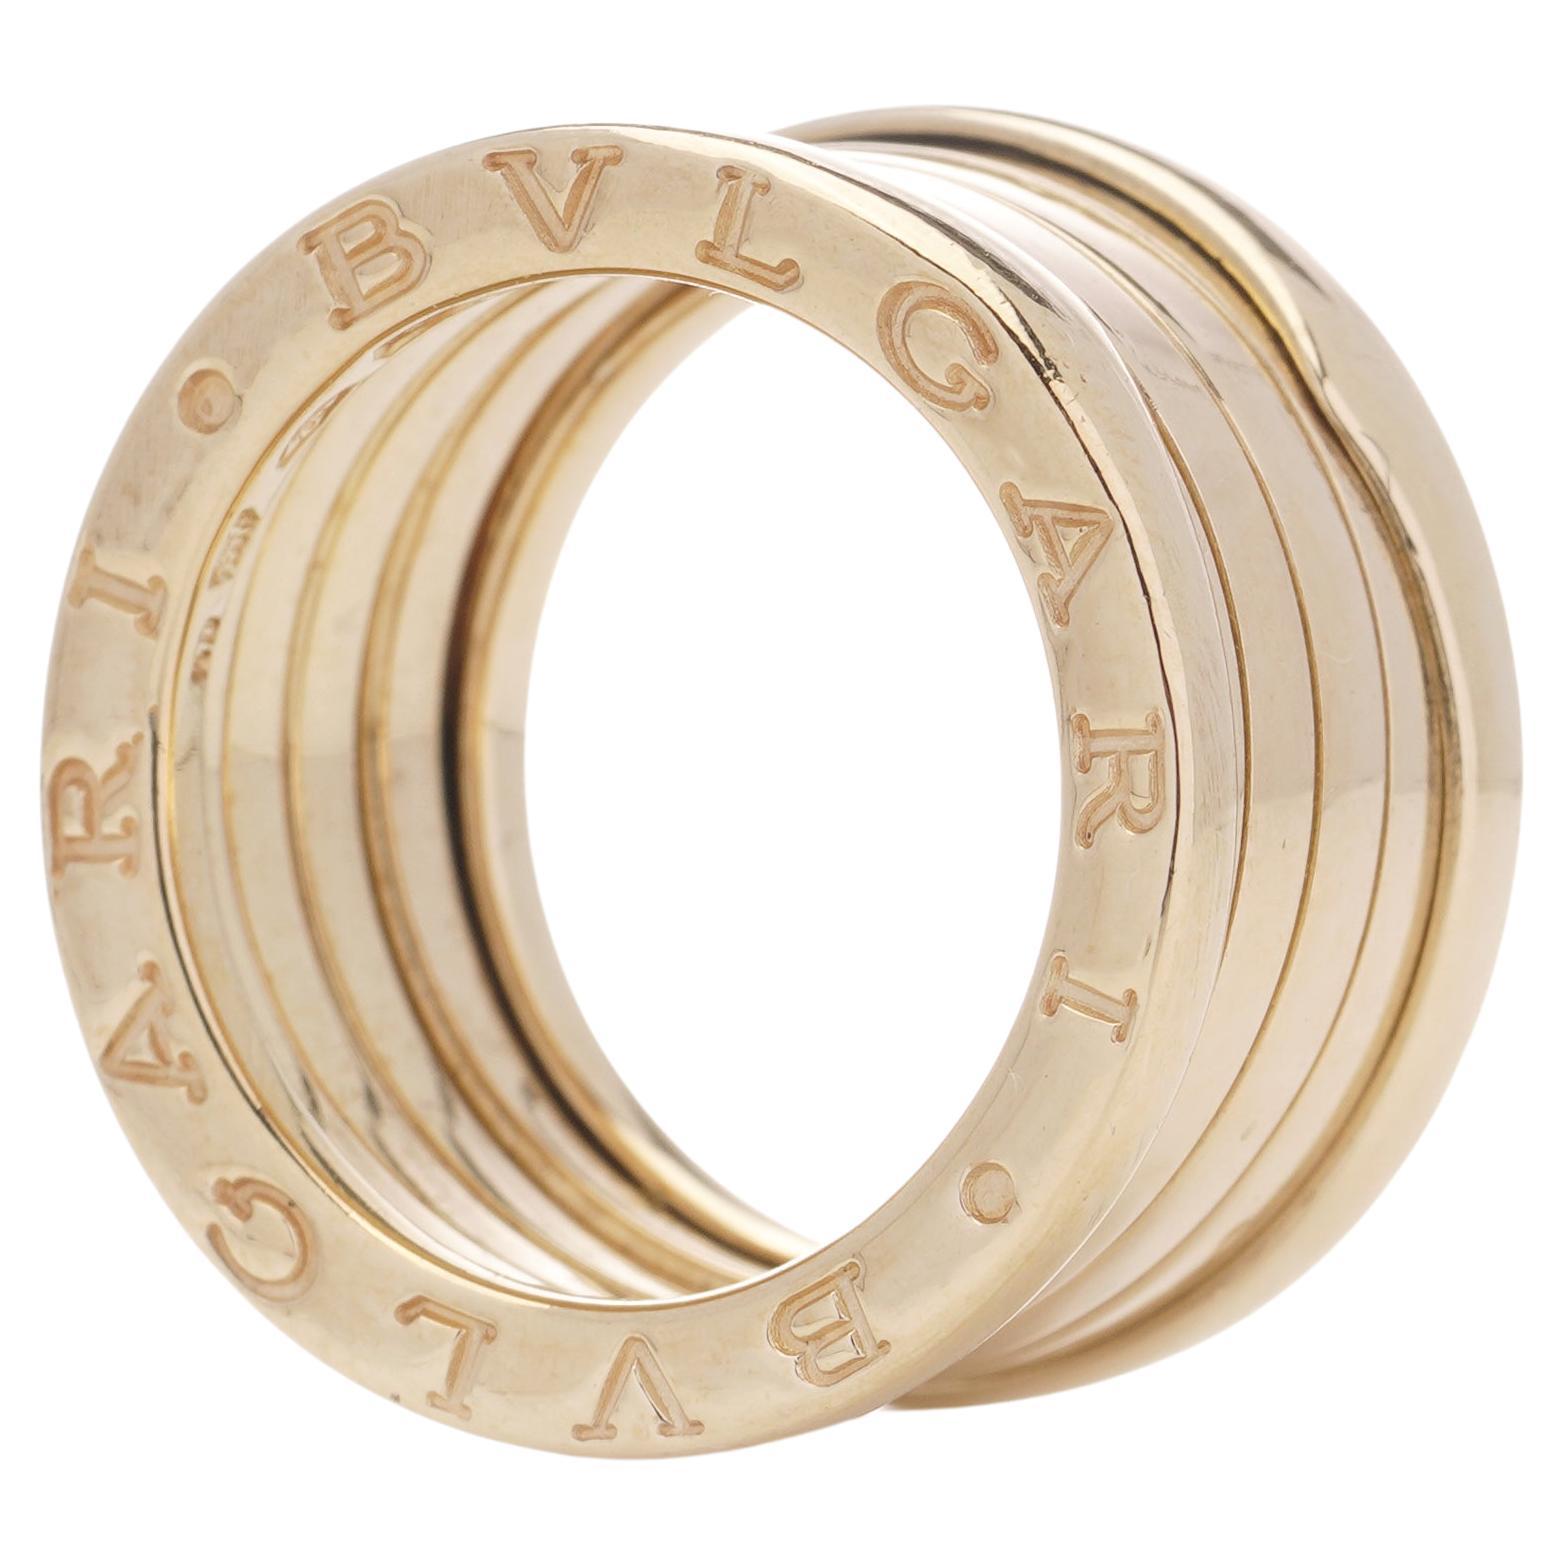 Bvlgari B. Zero1 18kt yellow gold band ring